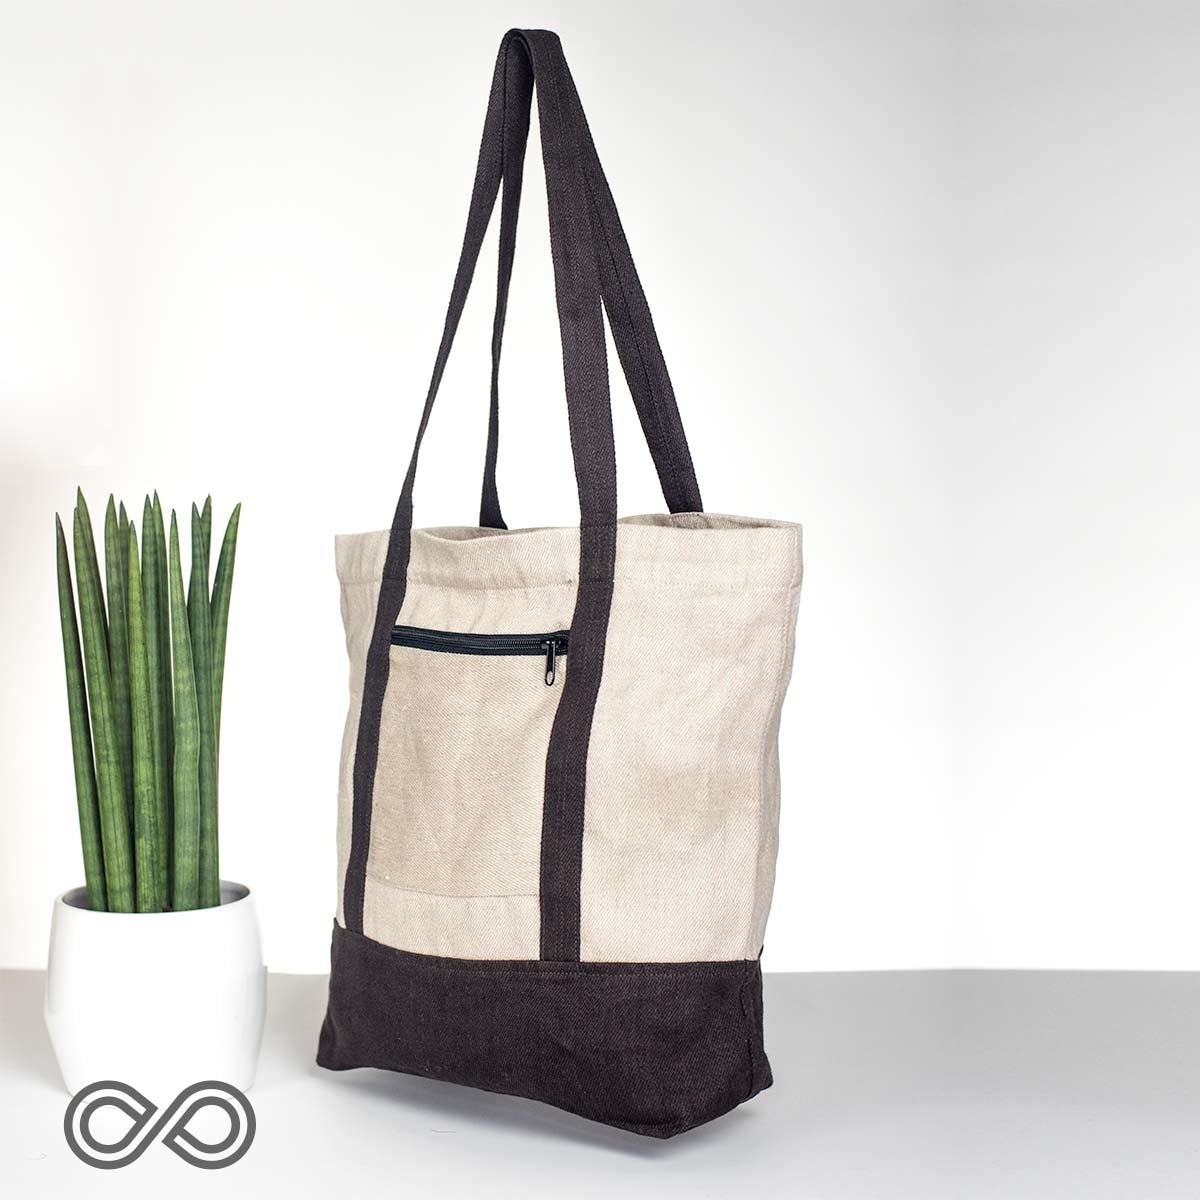 CAPE COD 100% Organic Hemp Tote Bag (14.5x12x4.5) (Plastic-free)